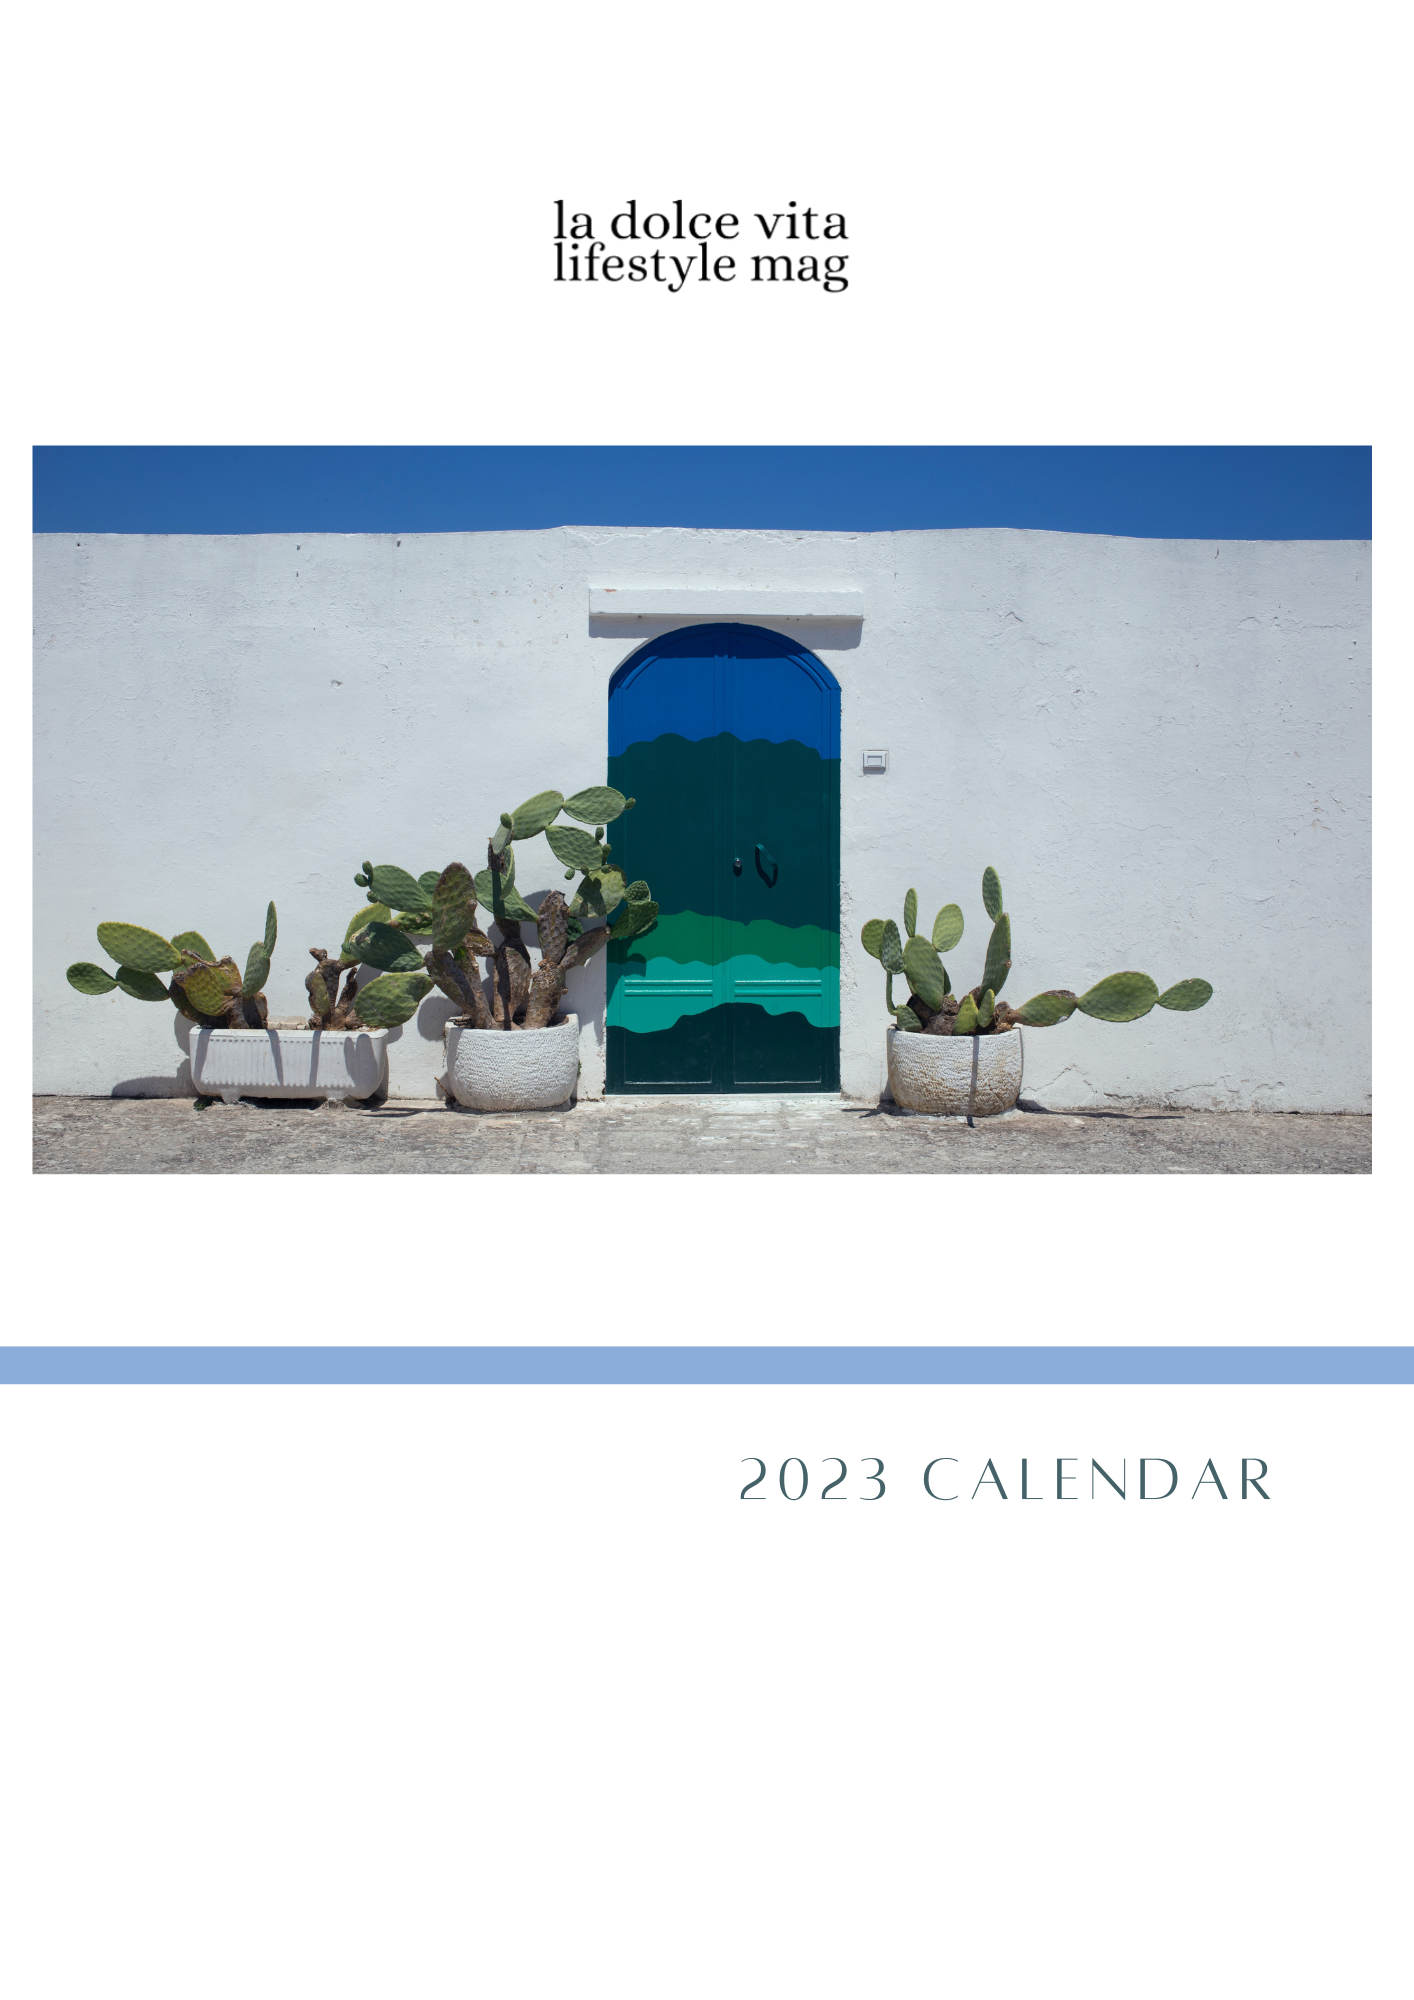 free-printable-2023-calendar-pdf-la-dolce-vita